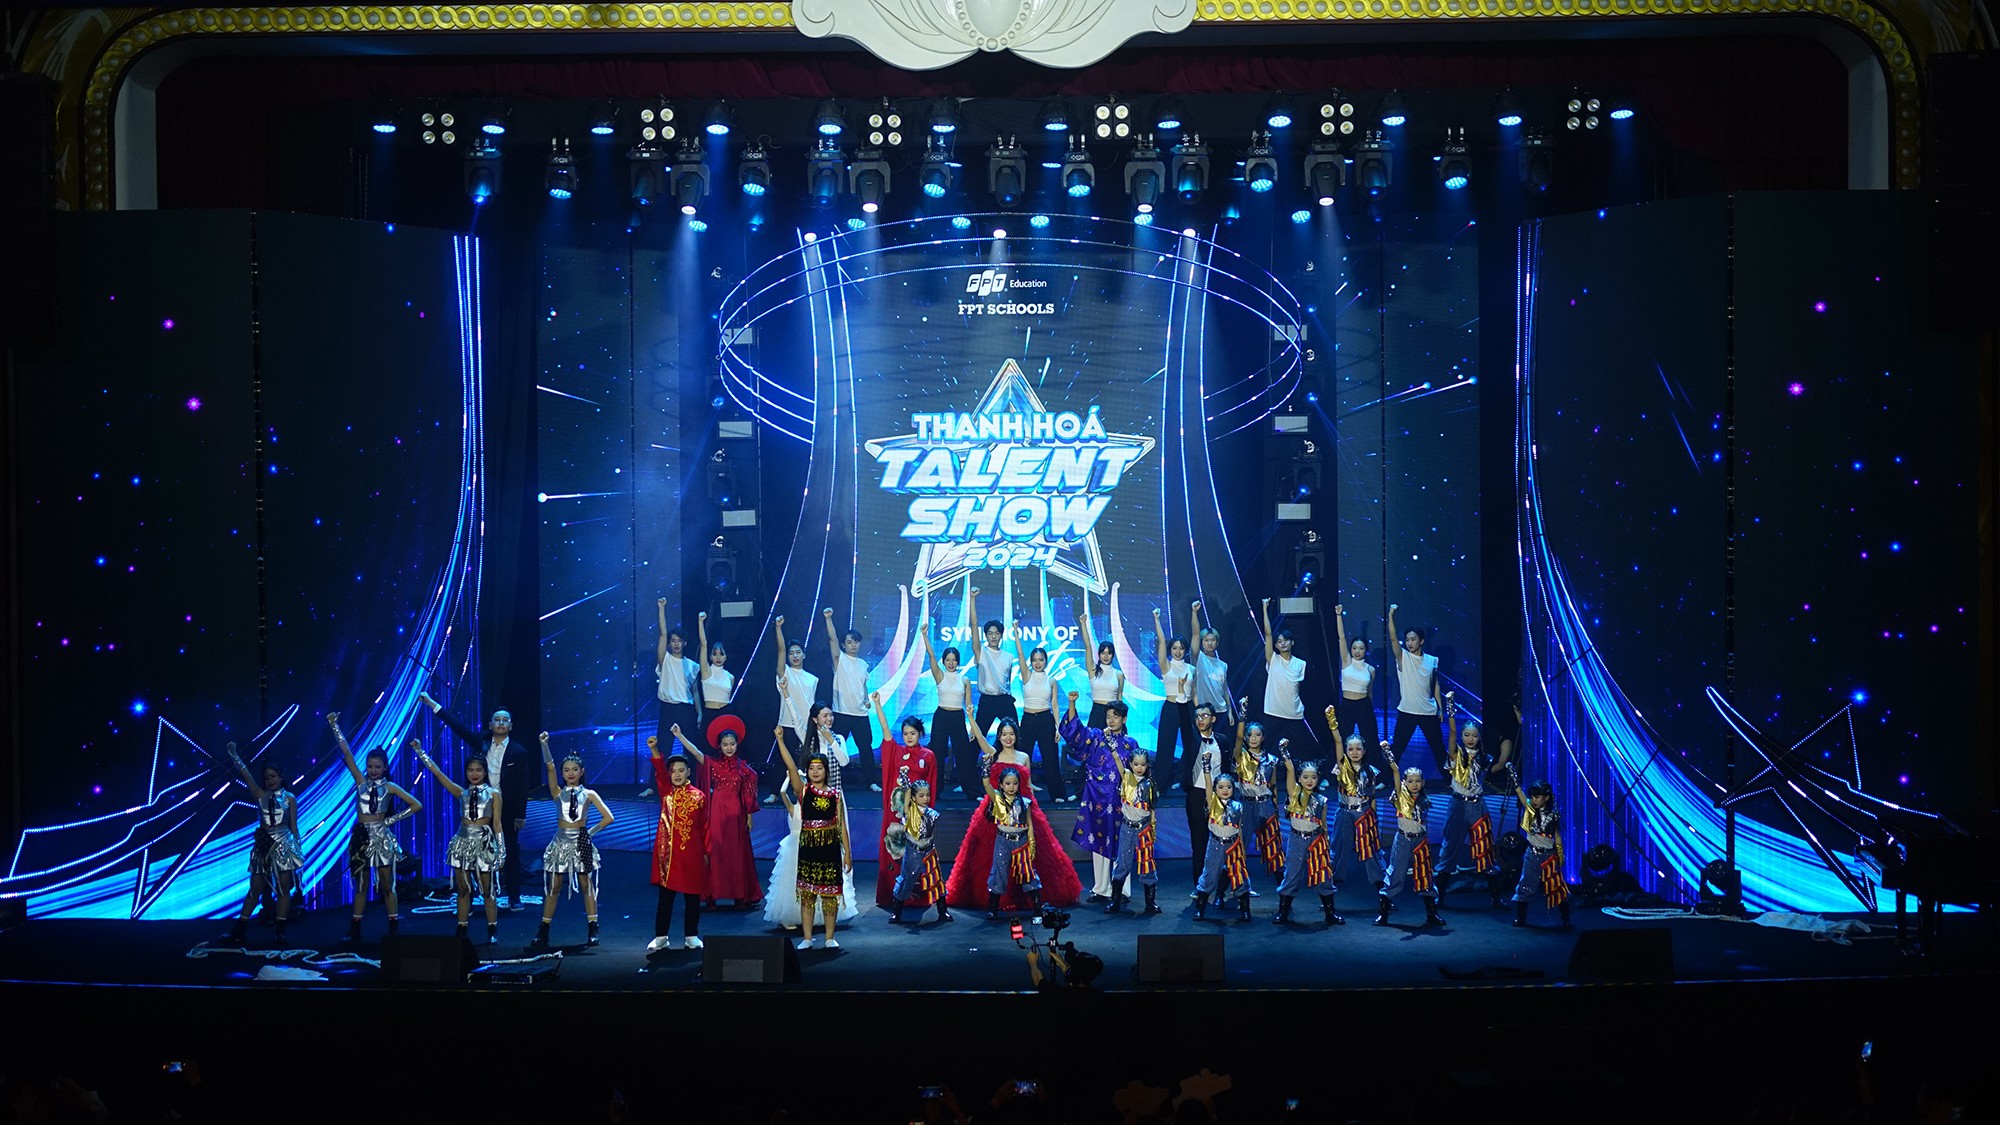 13 thí sinh đã cùng nhóm nhảy Soleil có màn chào sân hoành tráng tại Thanh Hoá Talent Show